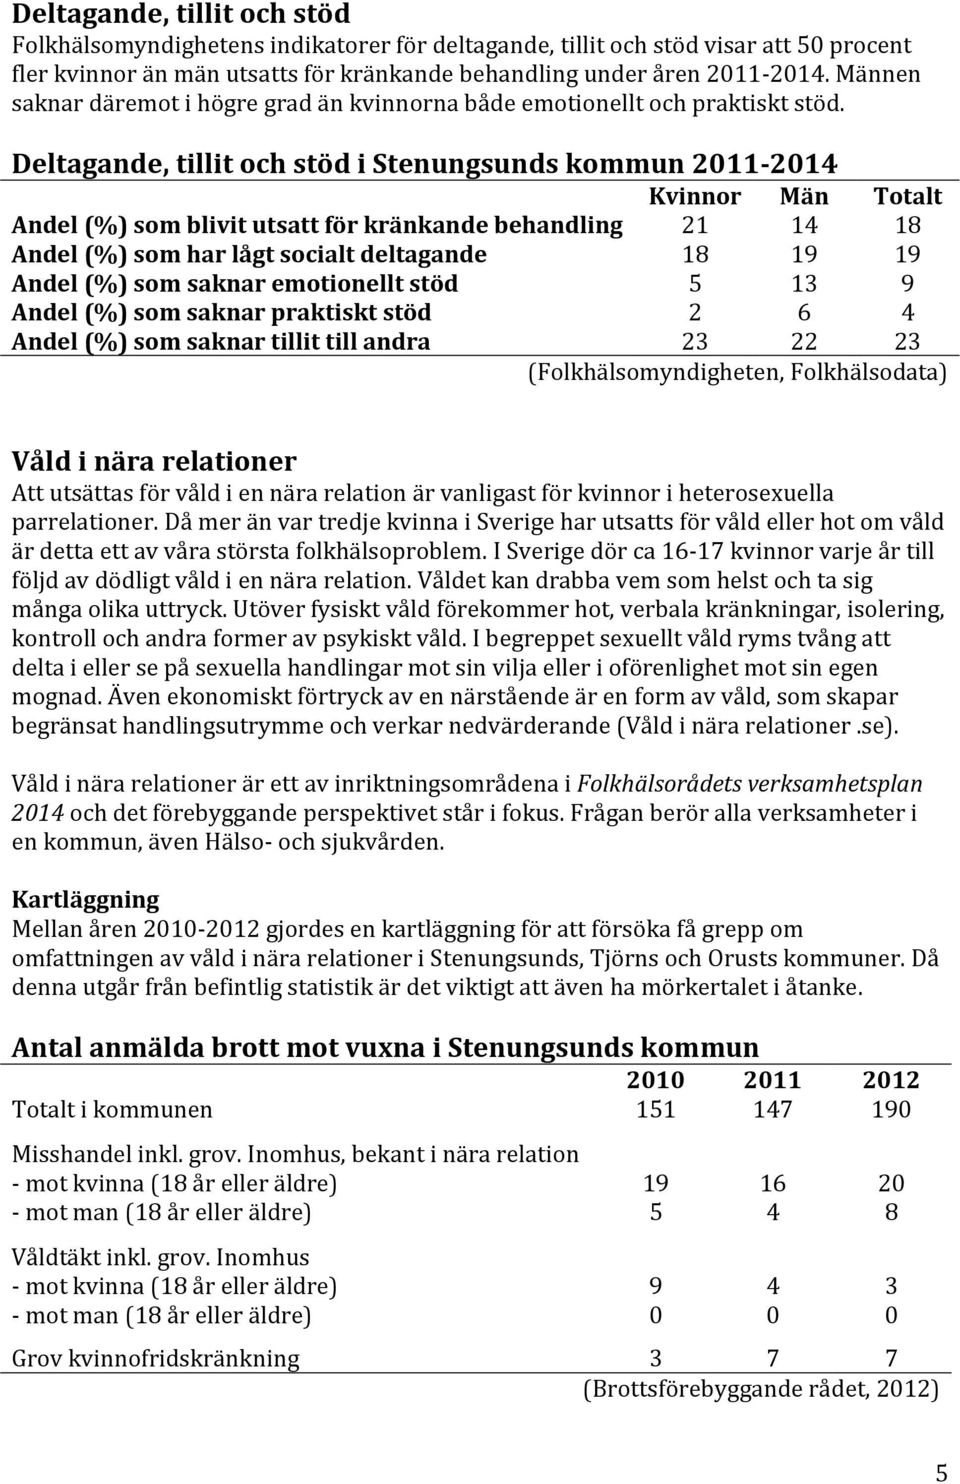 Deltagande, tillit och stöd i Stenungsunds kommun 2011-2014 Kvinnor Män Totalt Andel (%) som blivit utsatt för kränkande behandling 21 14 18 Andel (%) som har lågt socialt deltagande 18 19 19 Andel